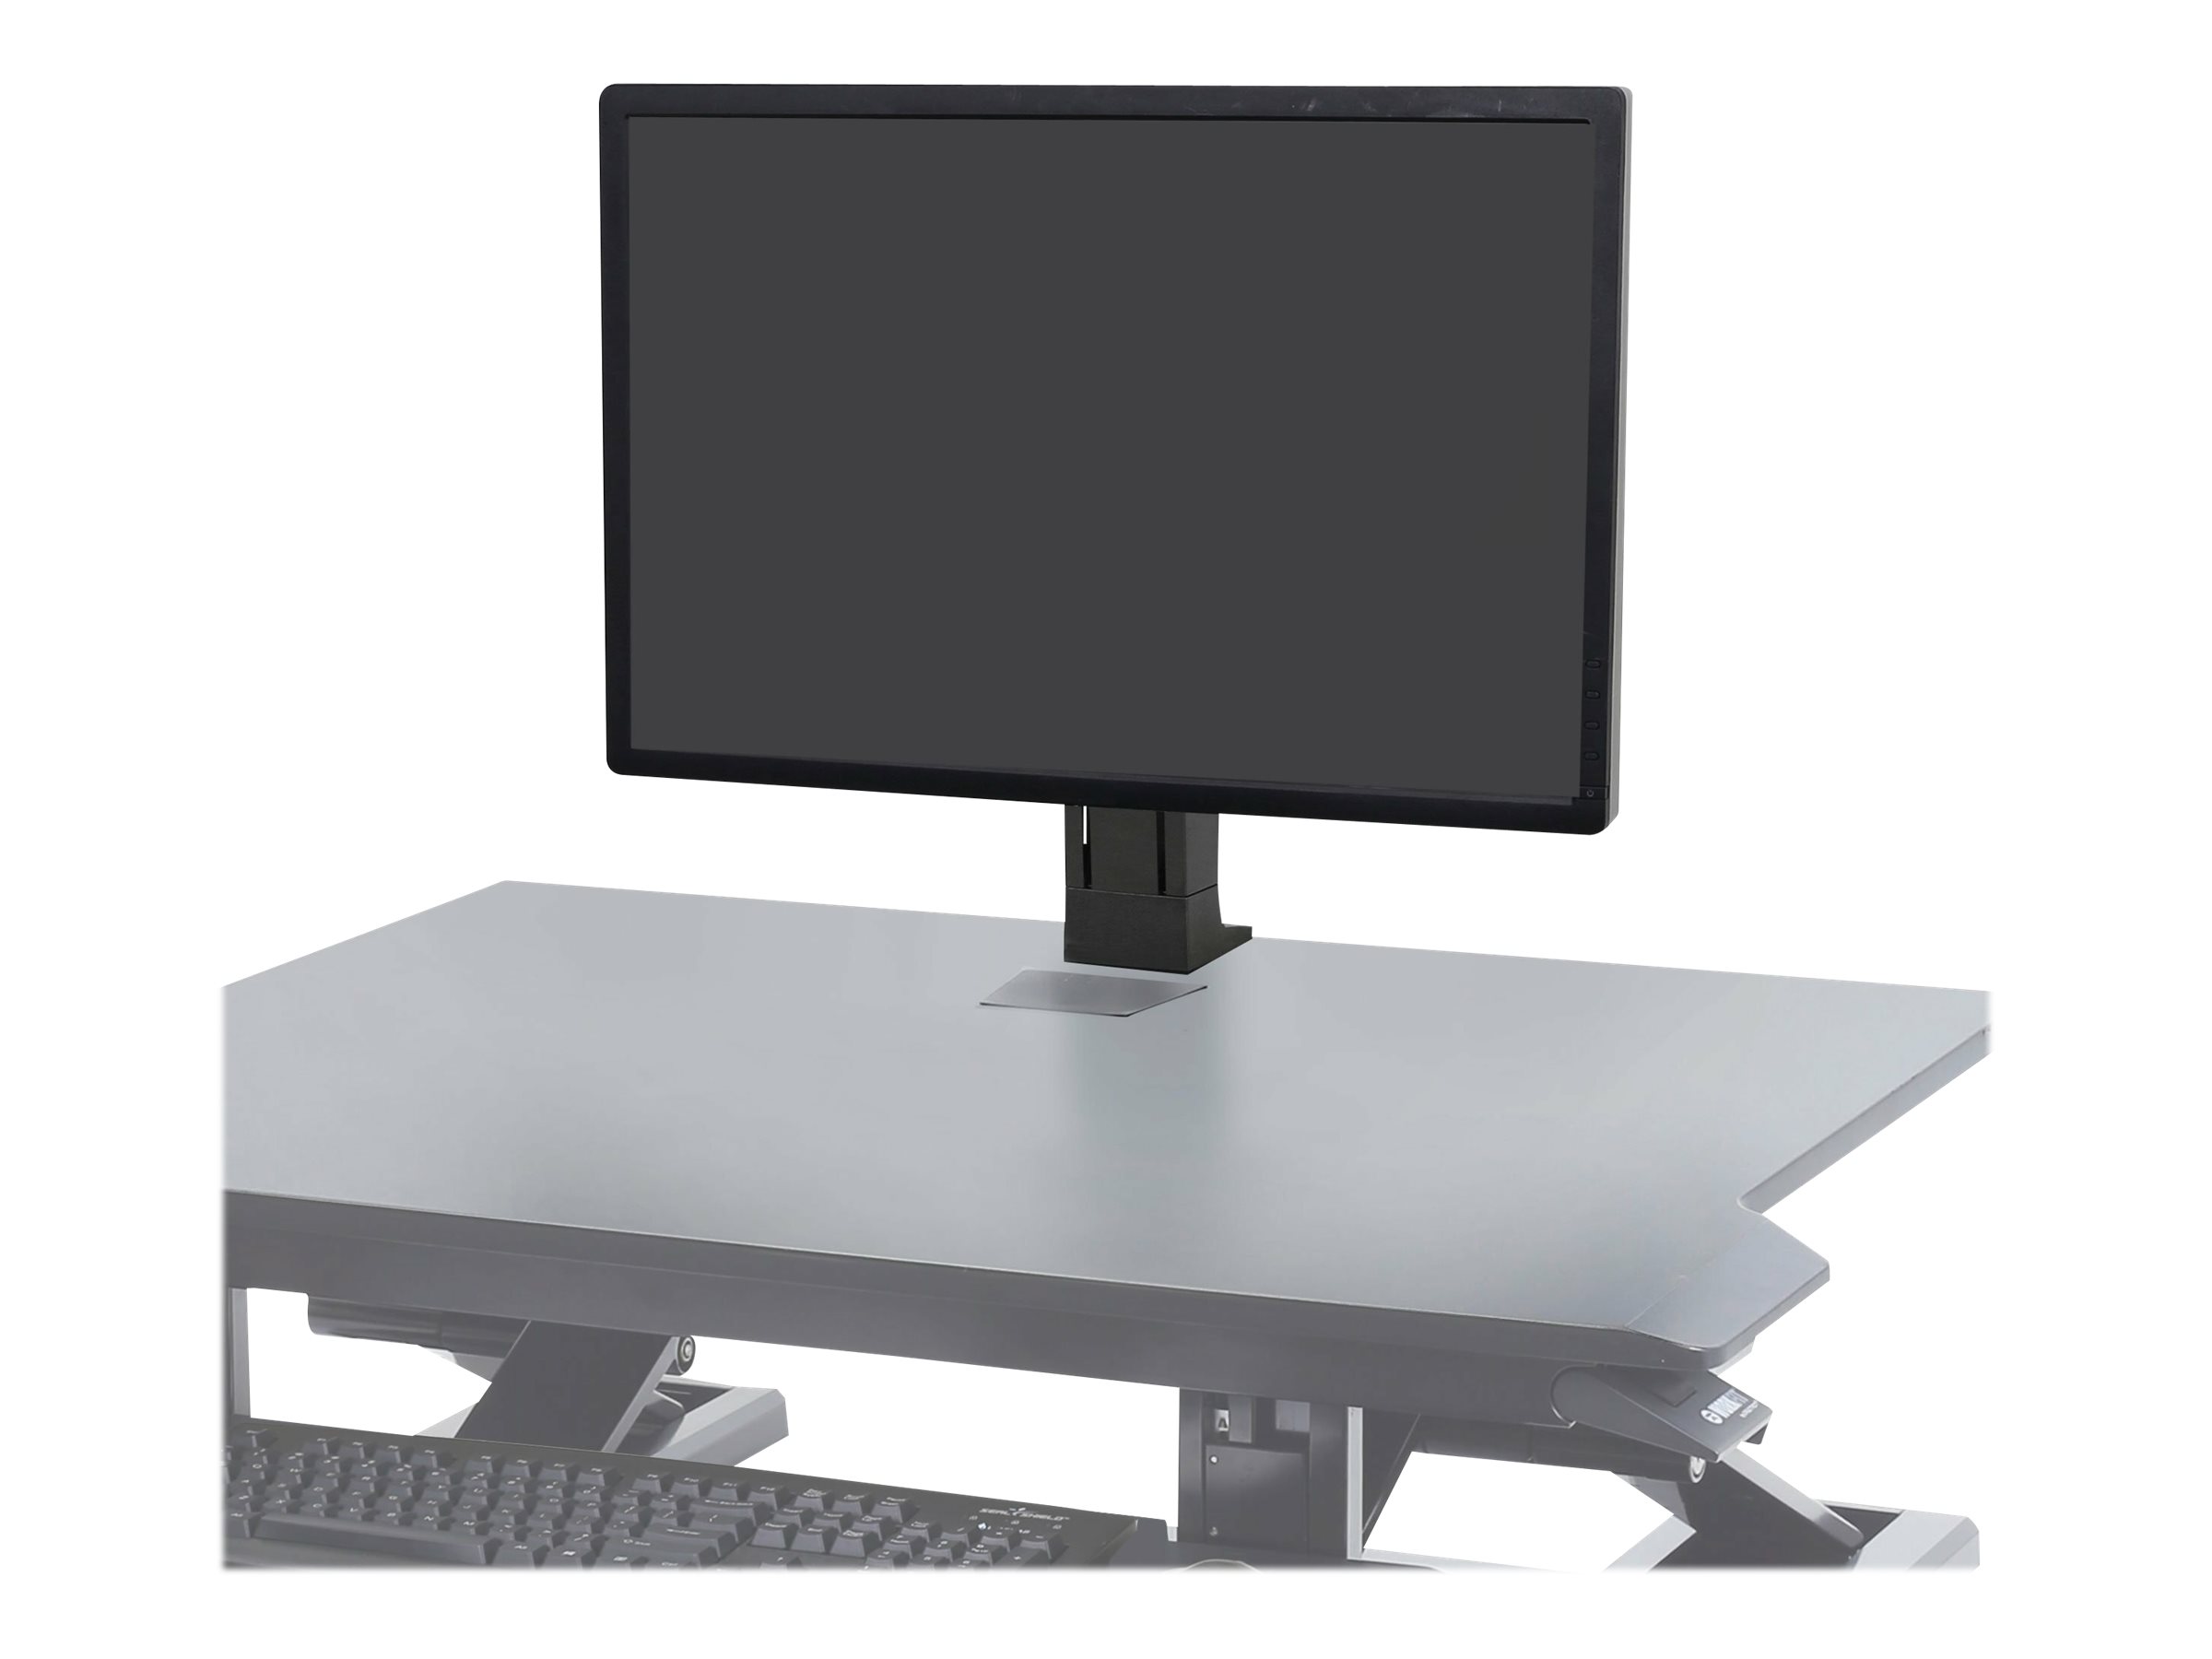 Ergotron WorkFit - Kit de montage (support de bureau) - pour Écran LCD - noir - Taille d'écran : jusqu'à 24 pouces - pour P/N: 33-467-921, 33-468-921 - 97-935-085 - Montages pour TV et moniteur